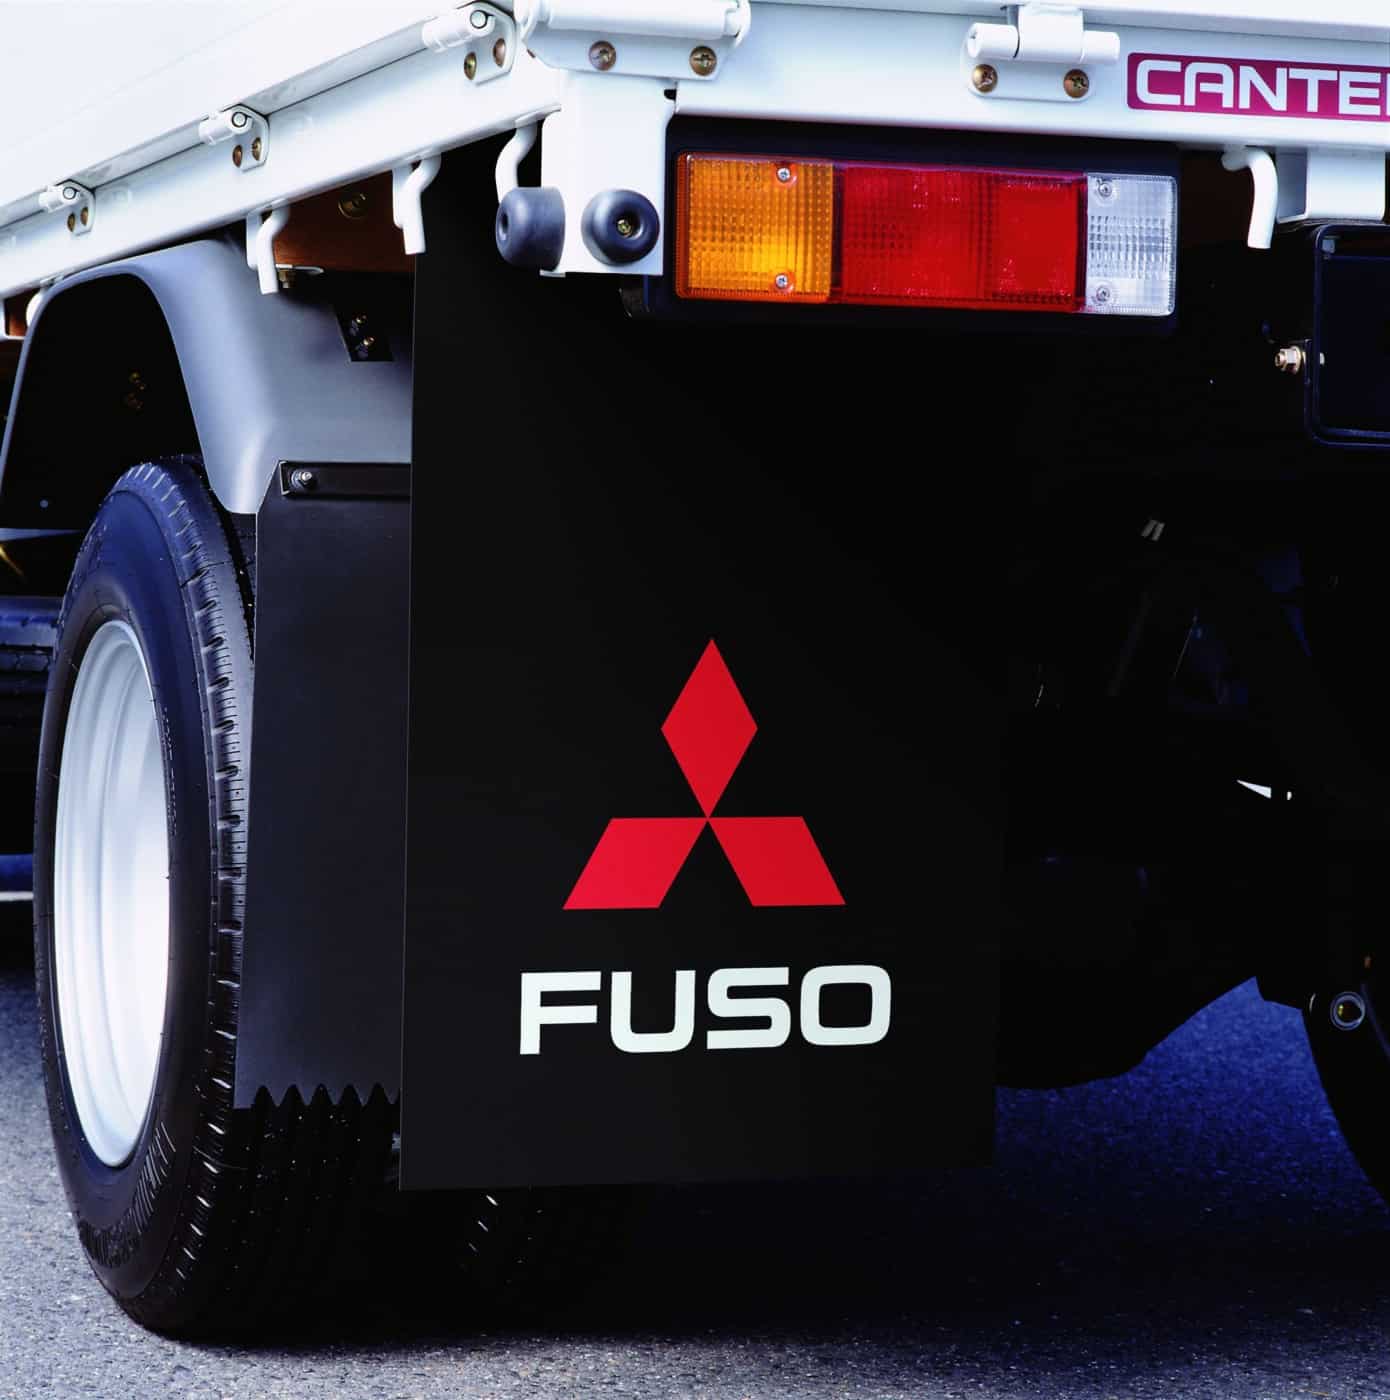 Οι λασπωτήρες FUSO προστατεύουν το όχημα, τους συνοδηγούς, τα άλλα οχήματα και τους πεζούς από τη λάσπη και τις ακαθαρσίες που εκτινάσσονται από τα ελαστικά.